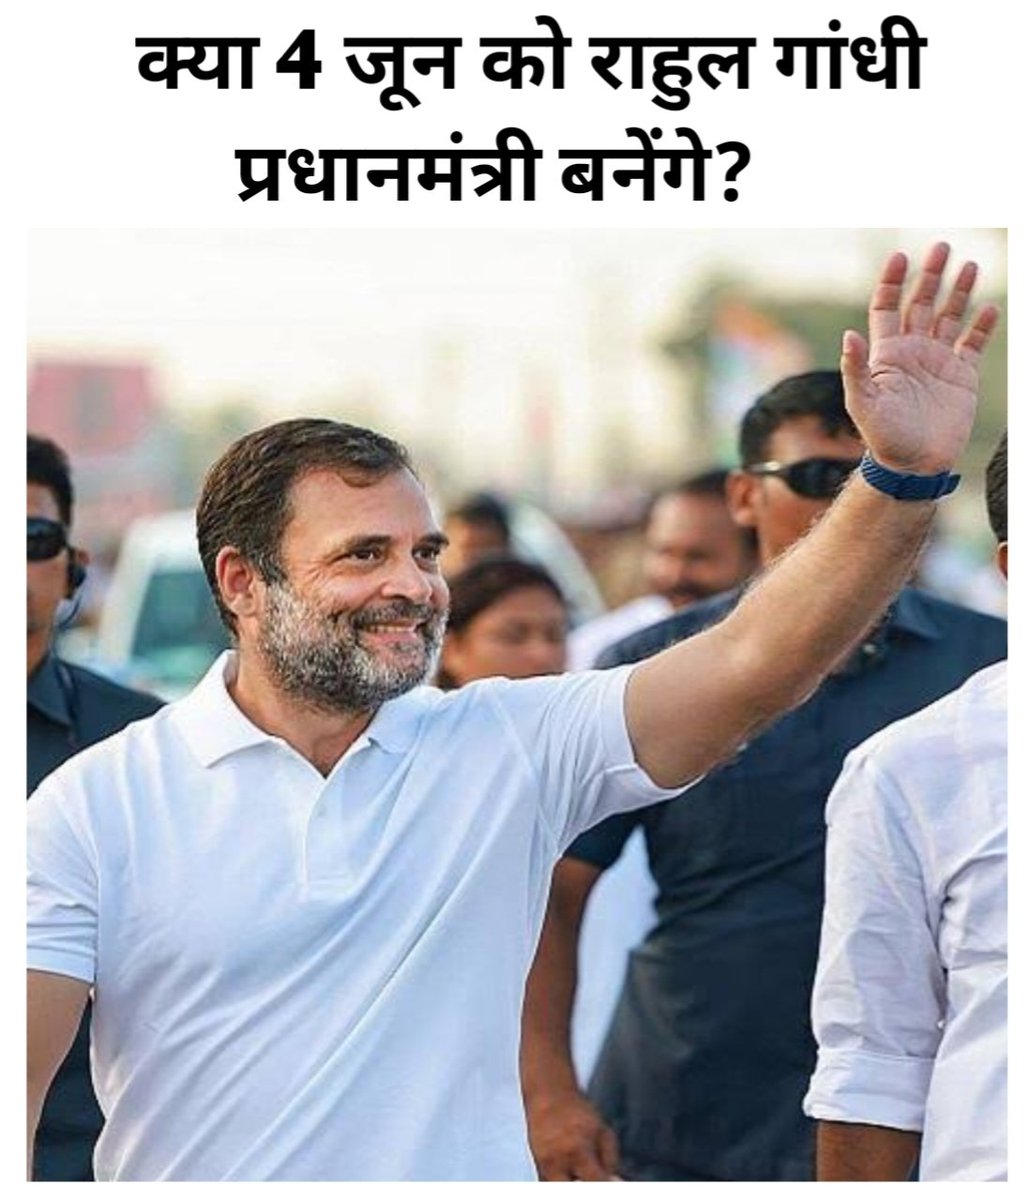 क्या 4 जून को राहुल गांधी ही बनेंगे प्रधानमंत्री?

1. हां ( Yes )
2. नही ( No )

फॉलो कर , जवाब कॉमेंट करे 🙏